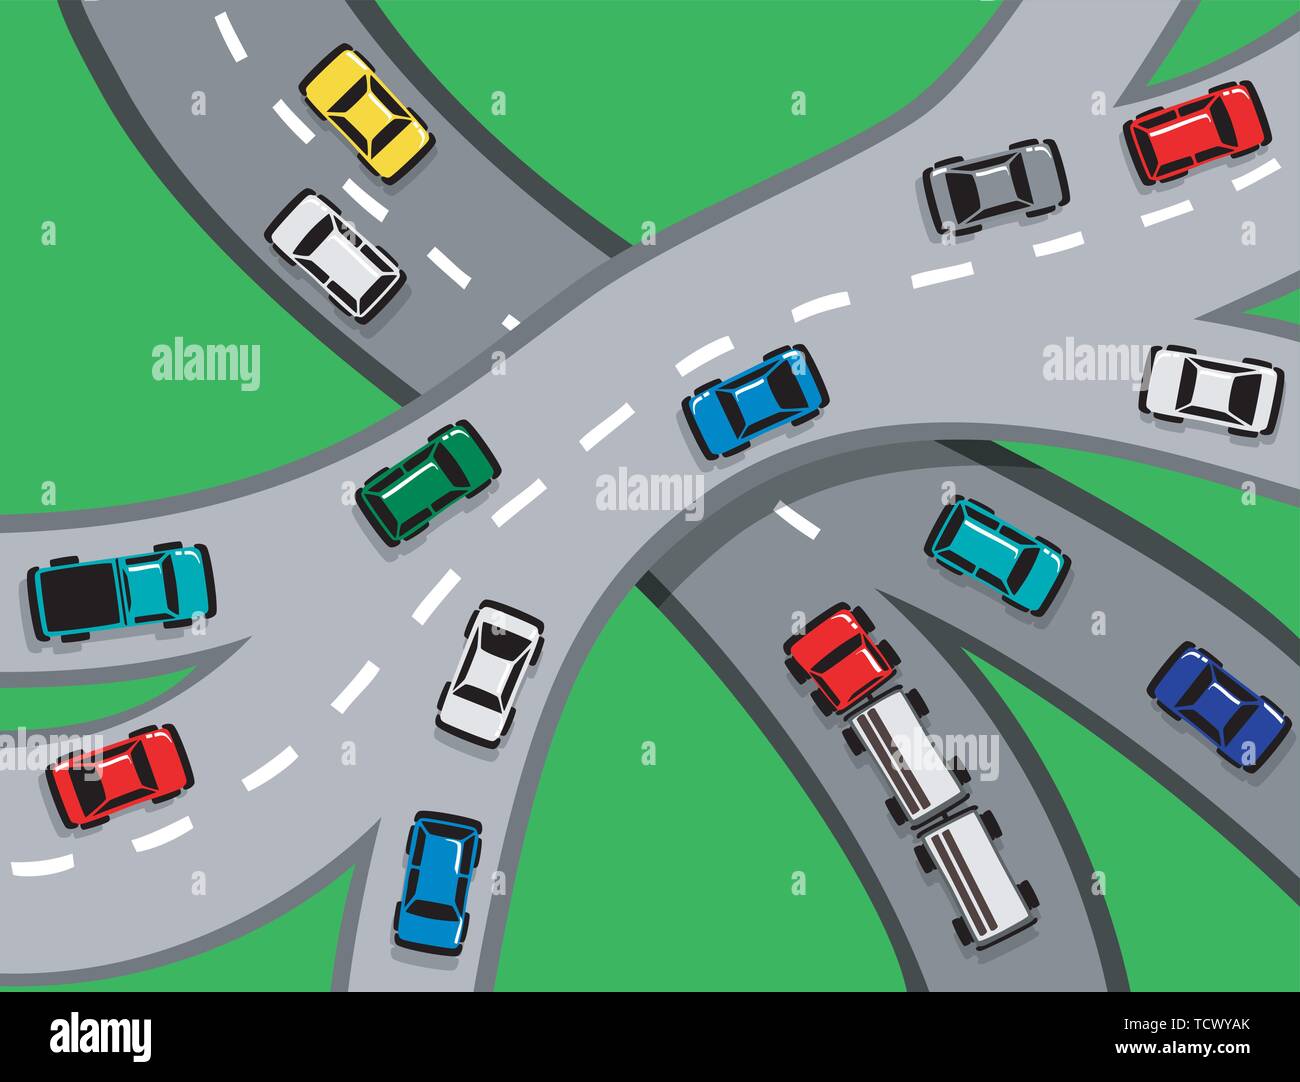 Le trafic avec des voitures et des camions sur une autoroute ou jonction autoroutière SPE8 Illustration de Vecteur